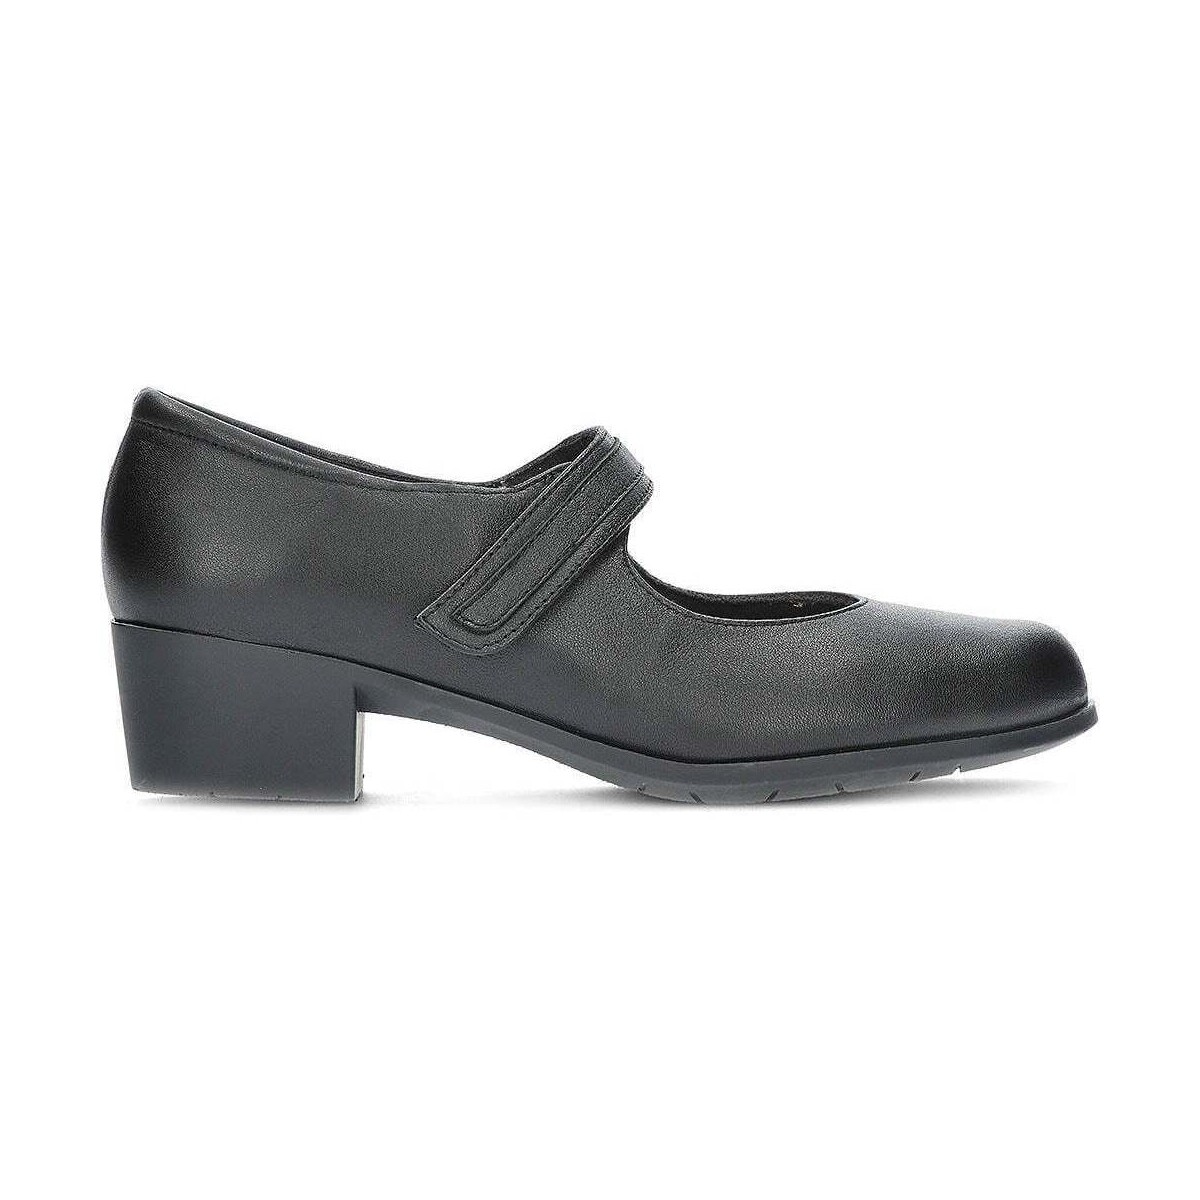 Chaussures Femme devenez membre gratuitement CHAUSSURES CLASSE CONFORT M5ELSA Noir